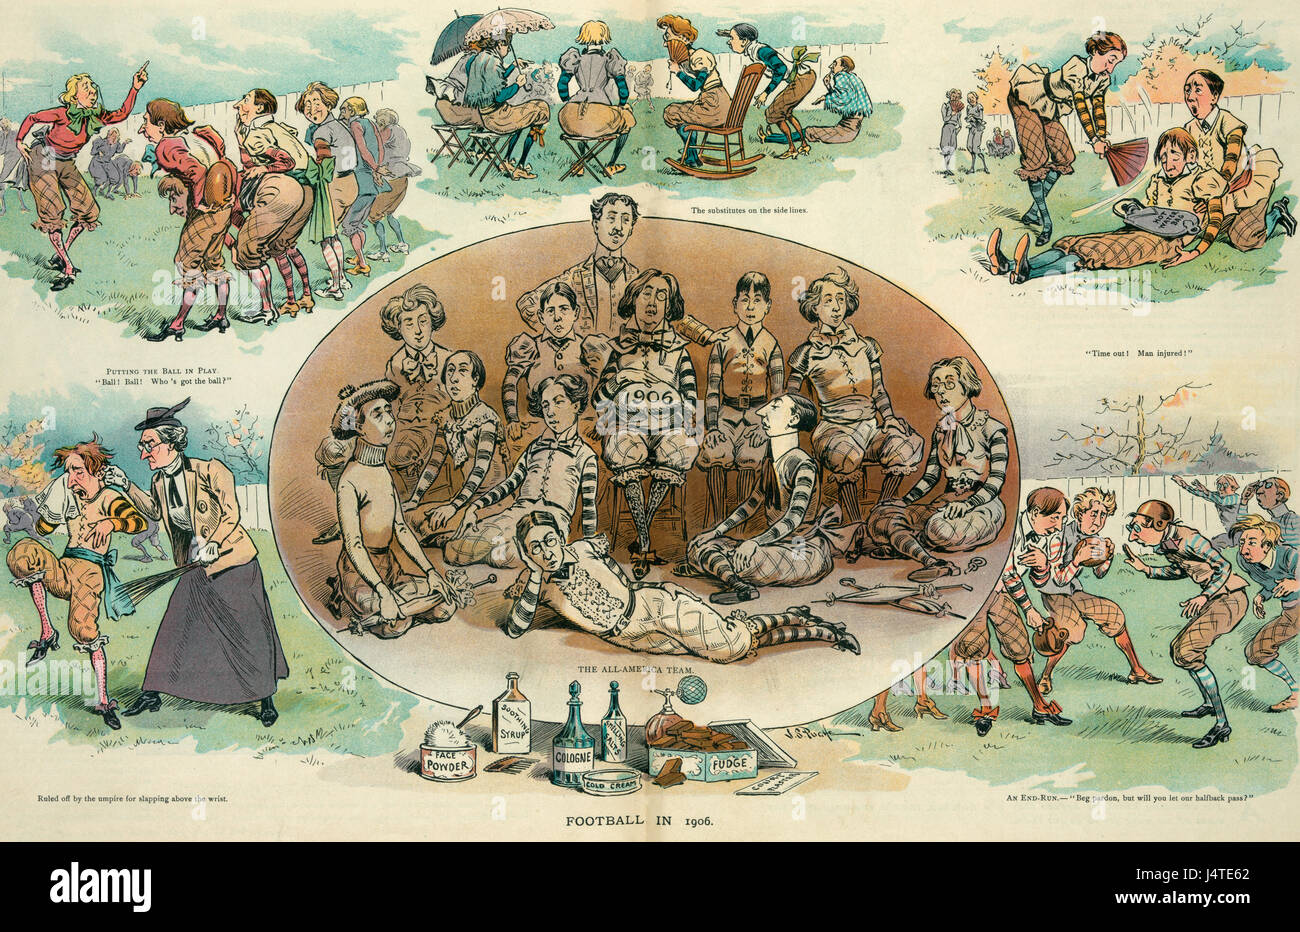 En 1906 Football - L'illustration montre une légère regarder le jeu du football comme s'il était joué par les hommes de natures dainty efféminés. Caricature politique Banque D'Images